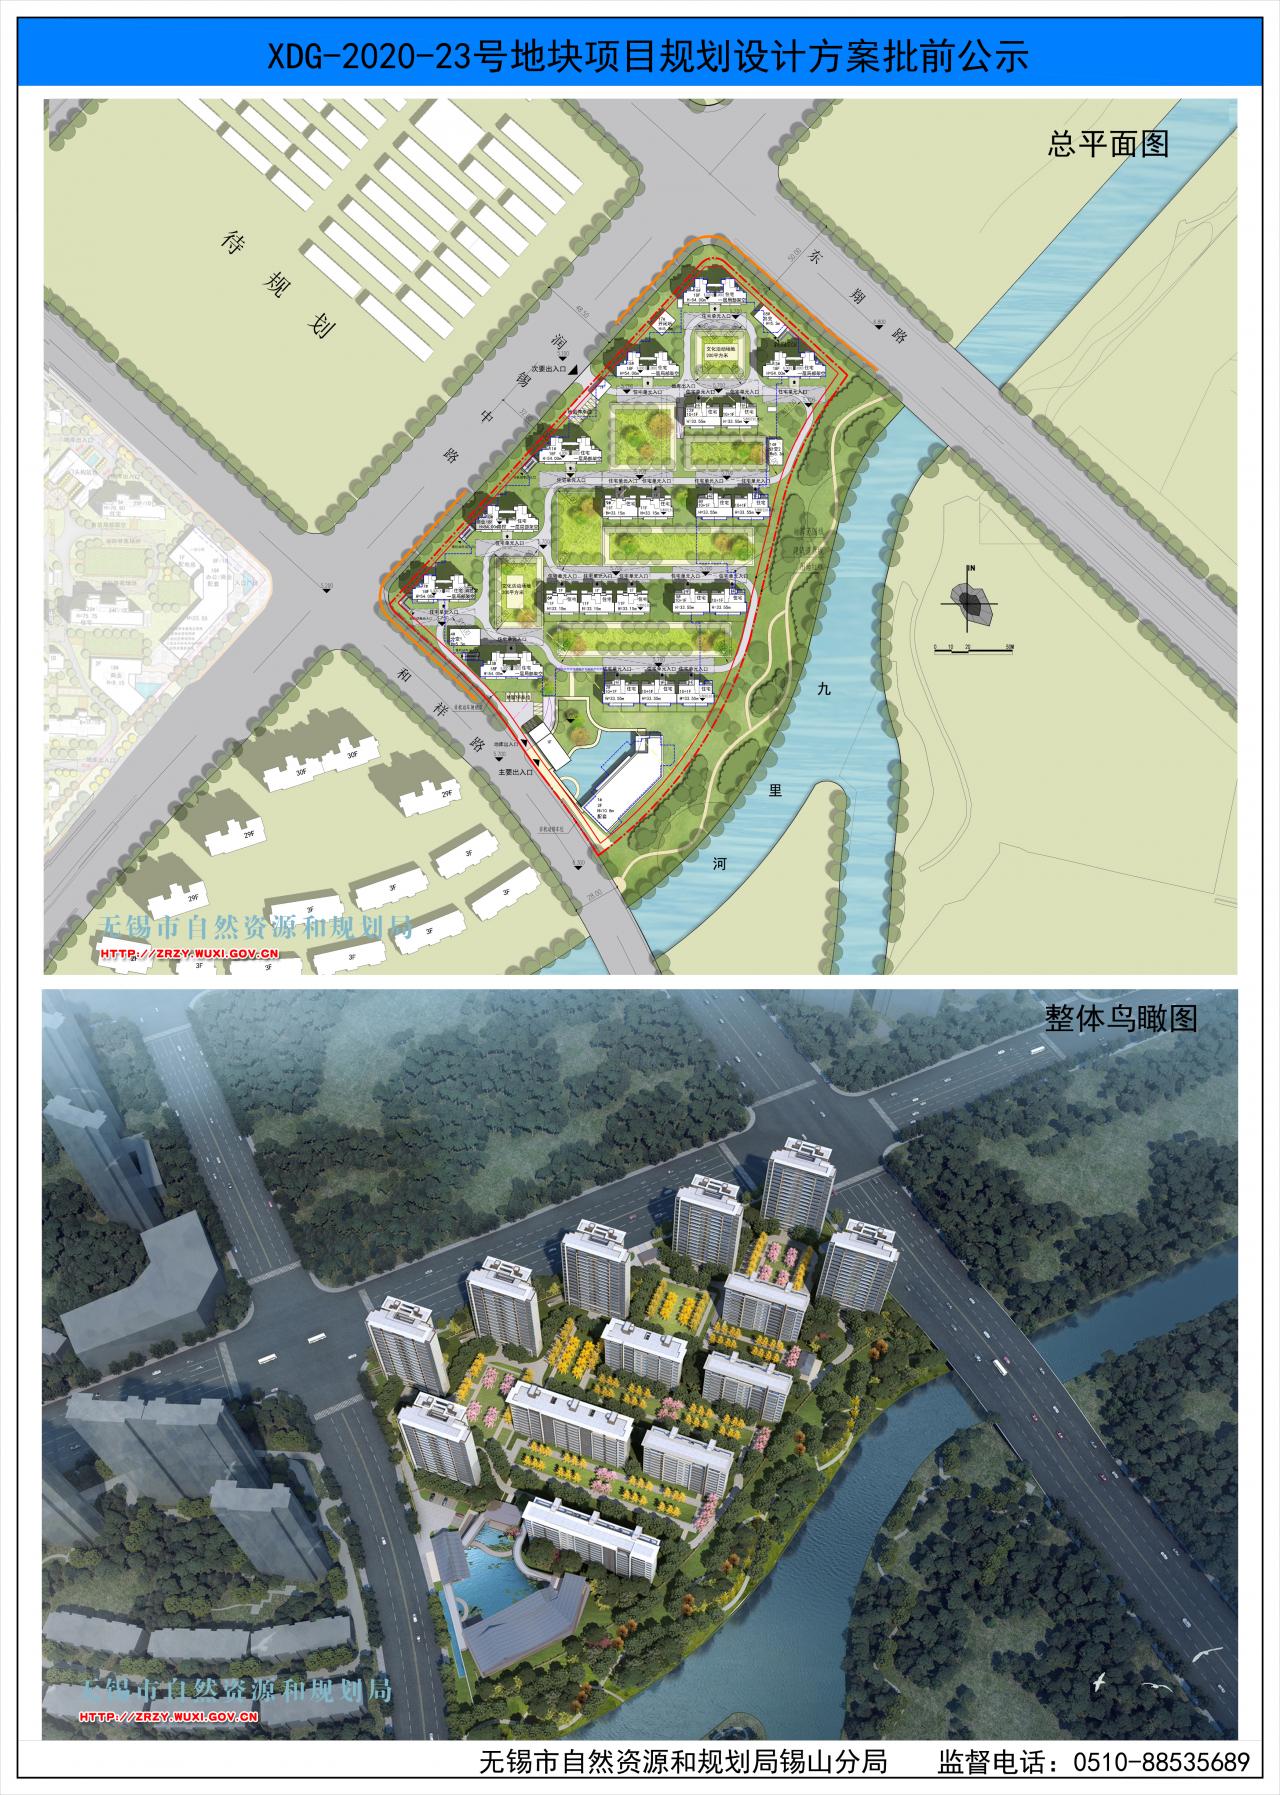 无锡彰泰房地产开发有限公司XDG-2020-23号地块开发项目规划设计方案批前公示